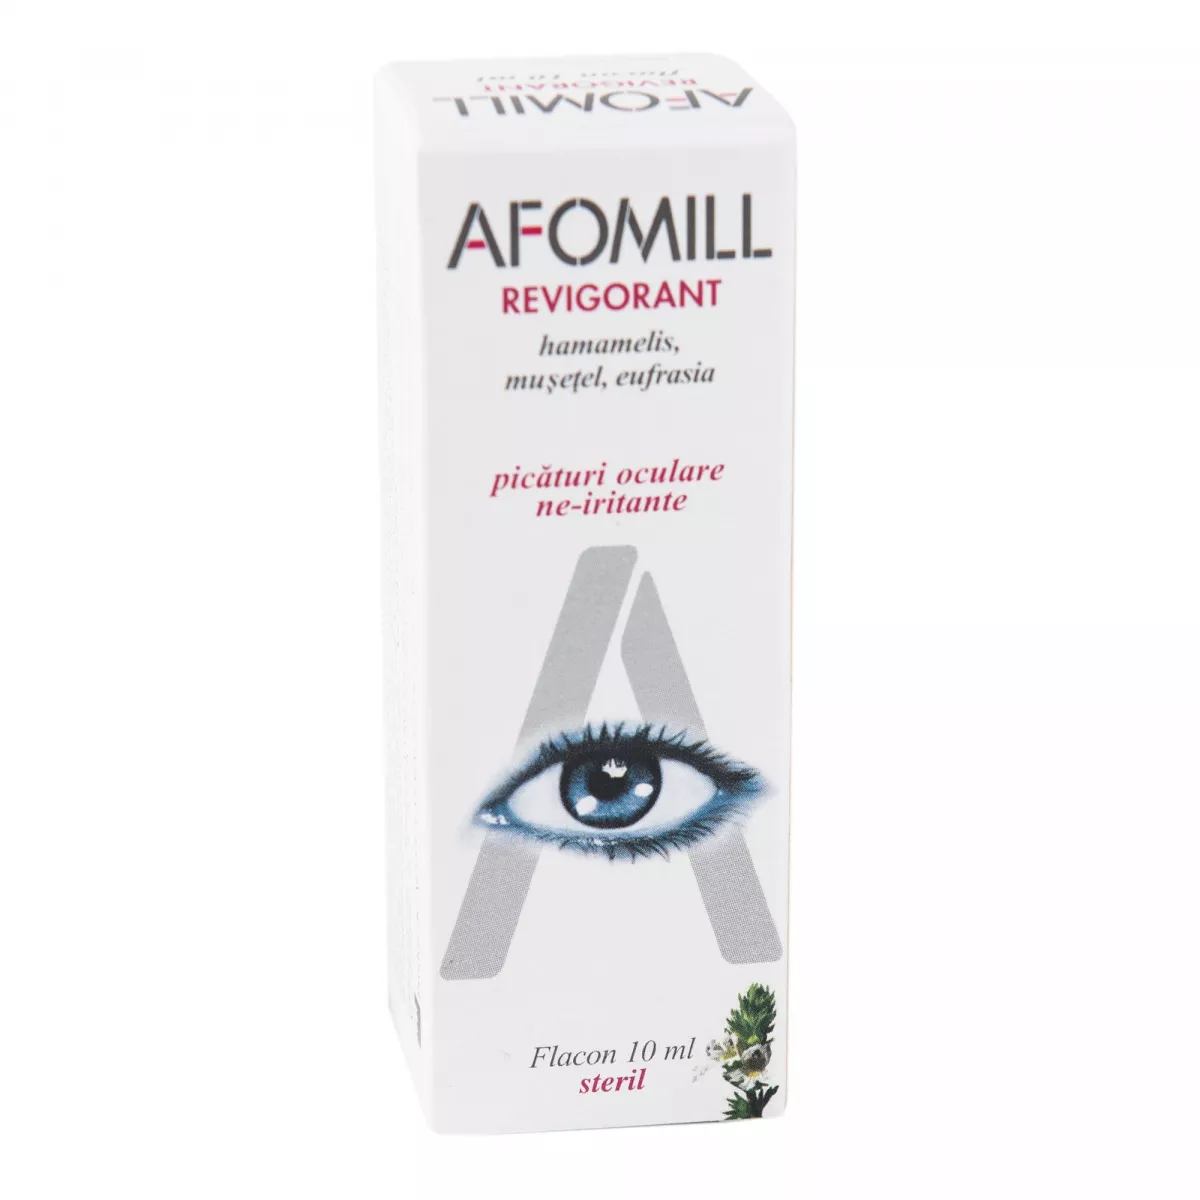 Picaturi oculare revigorante Afomill, 10 ml, Af United, [],remediumfarm.ro